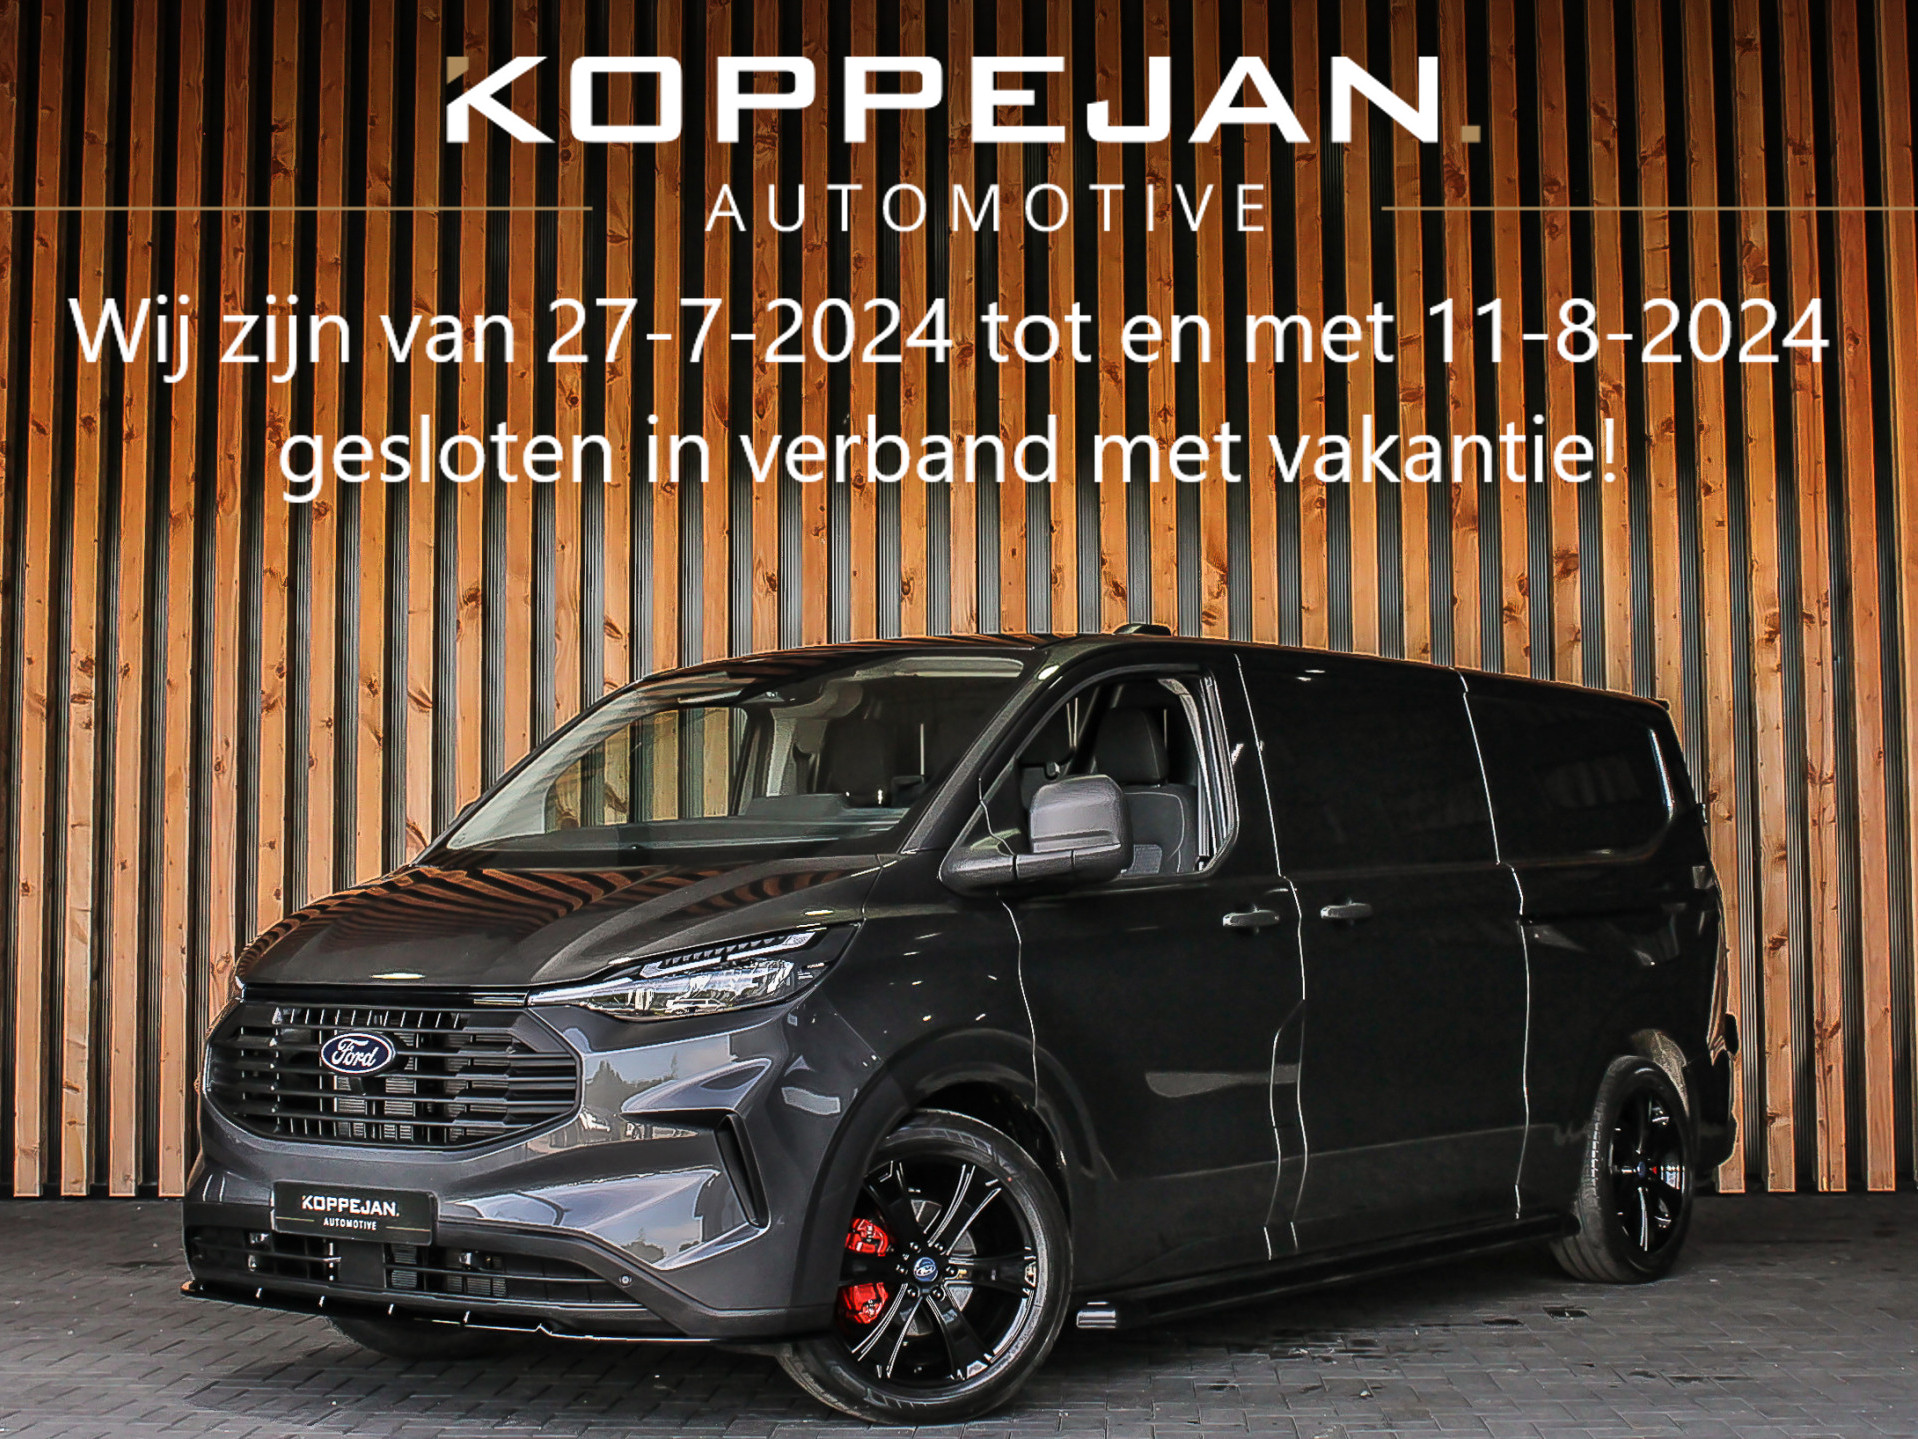 Ford Transit Custom 320 2.0 TDCI Automaat Koppejan Edition L2H1 | 2X SCHUIFDEUR | ACC | NAVI | DODEHOEK | CAMERA | VOORRUIT VERWARMING |